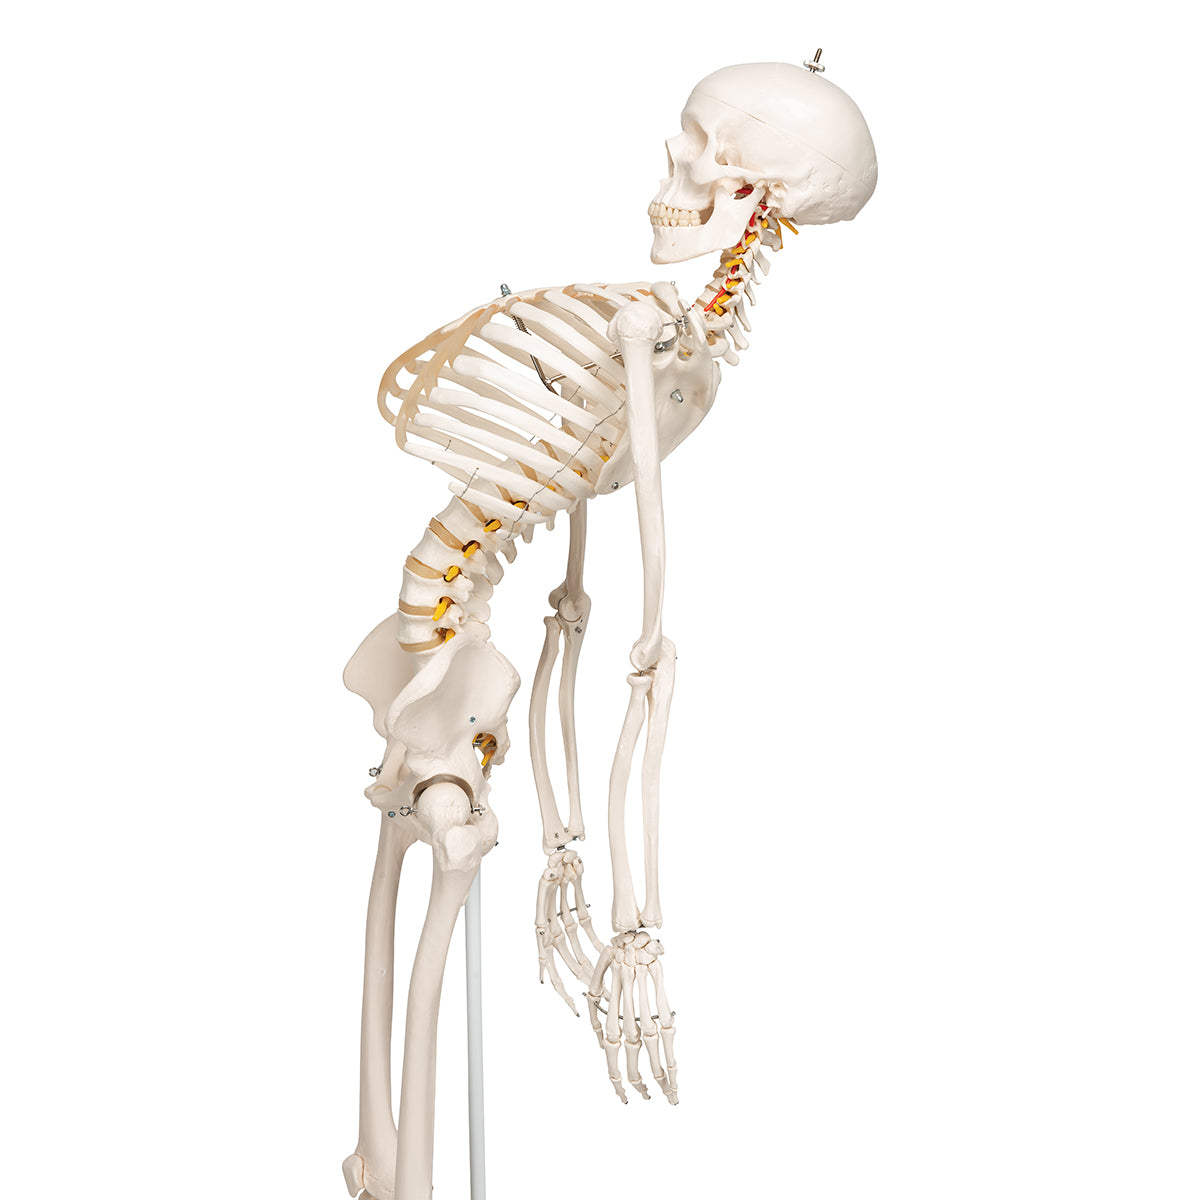 Skelettmodell med rörlig ryggrad och ryggradsnerver